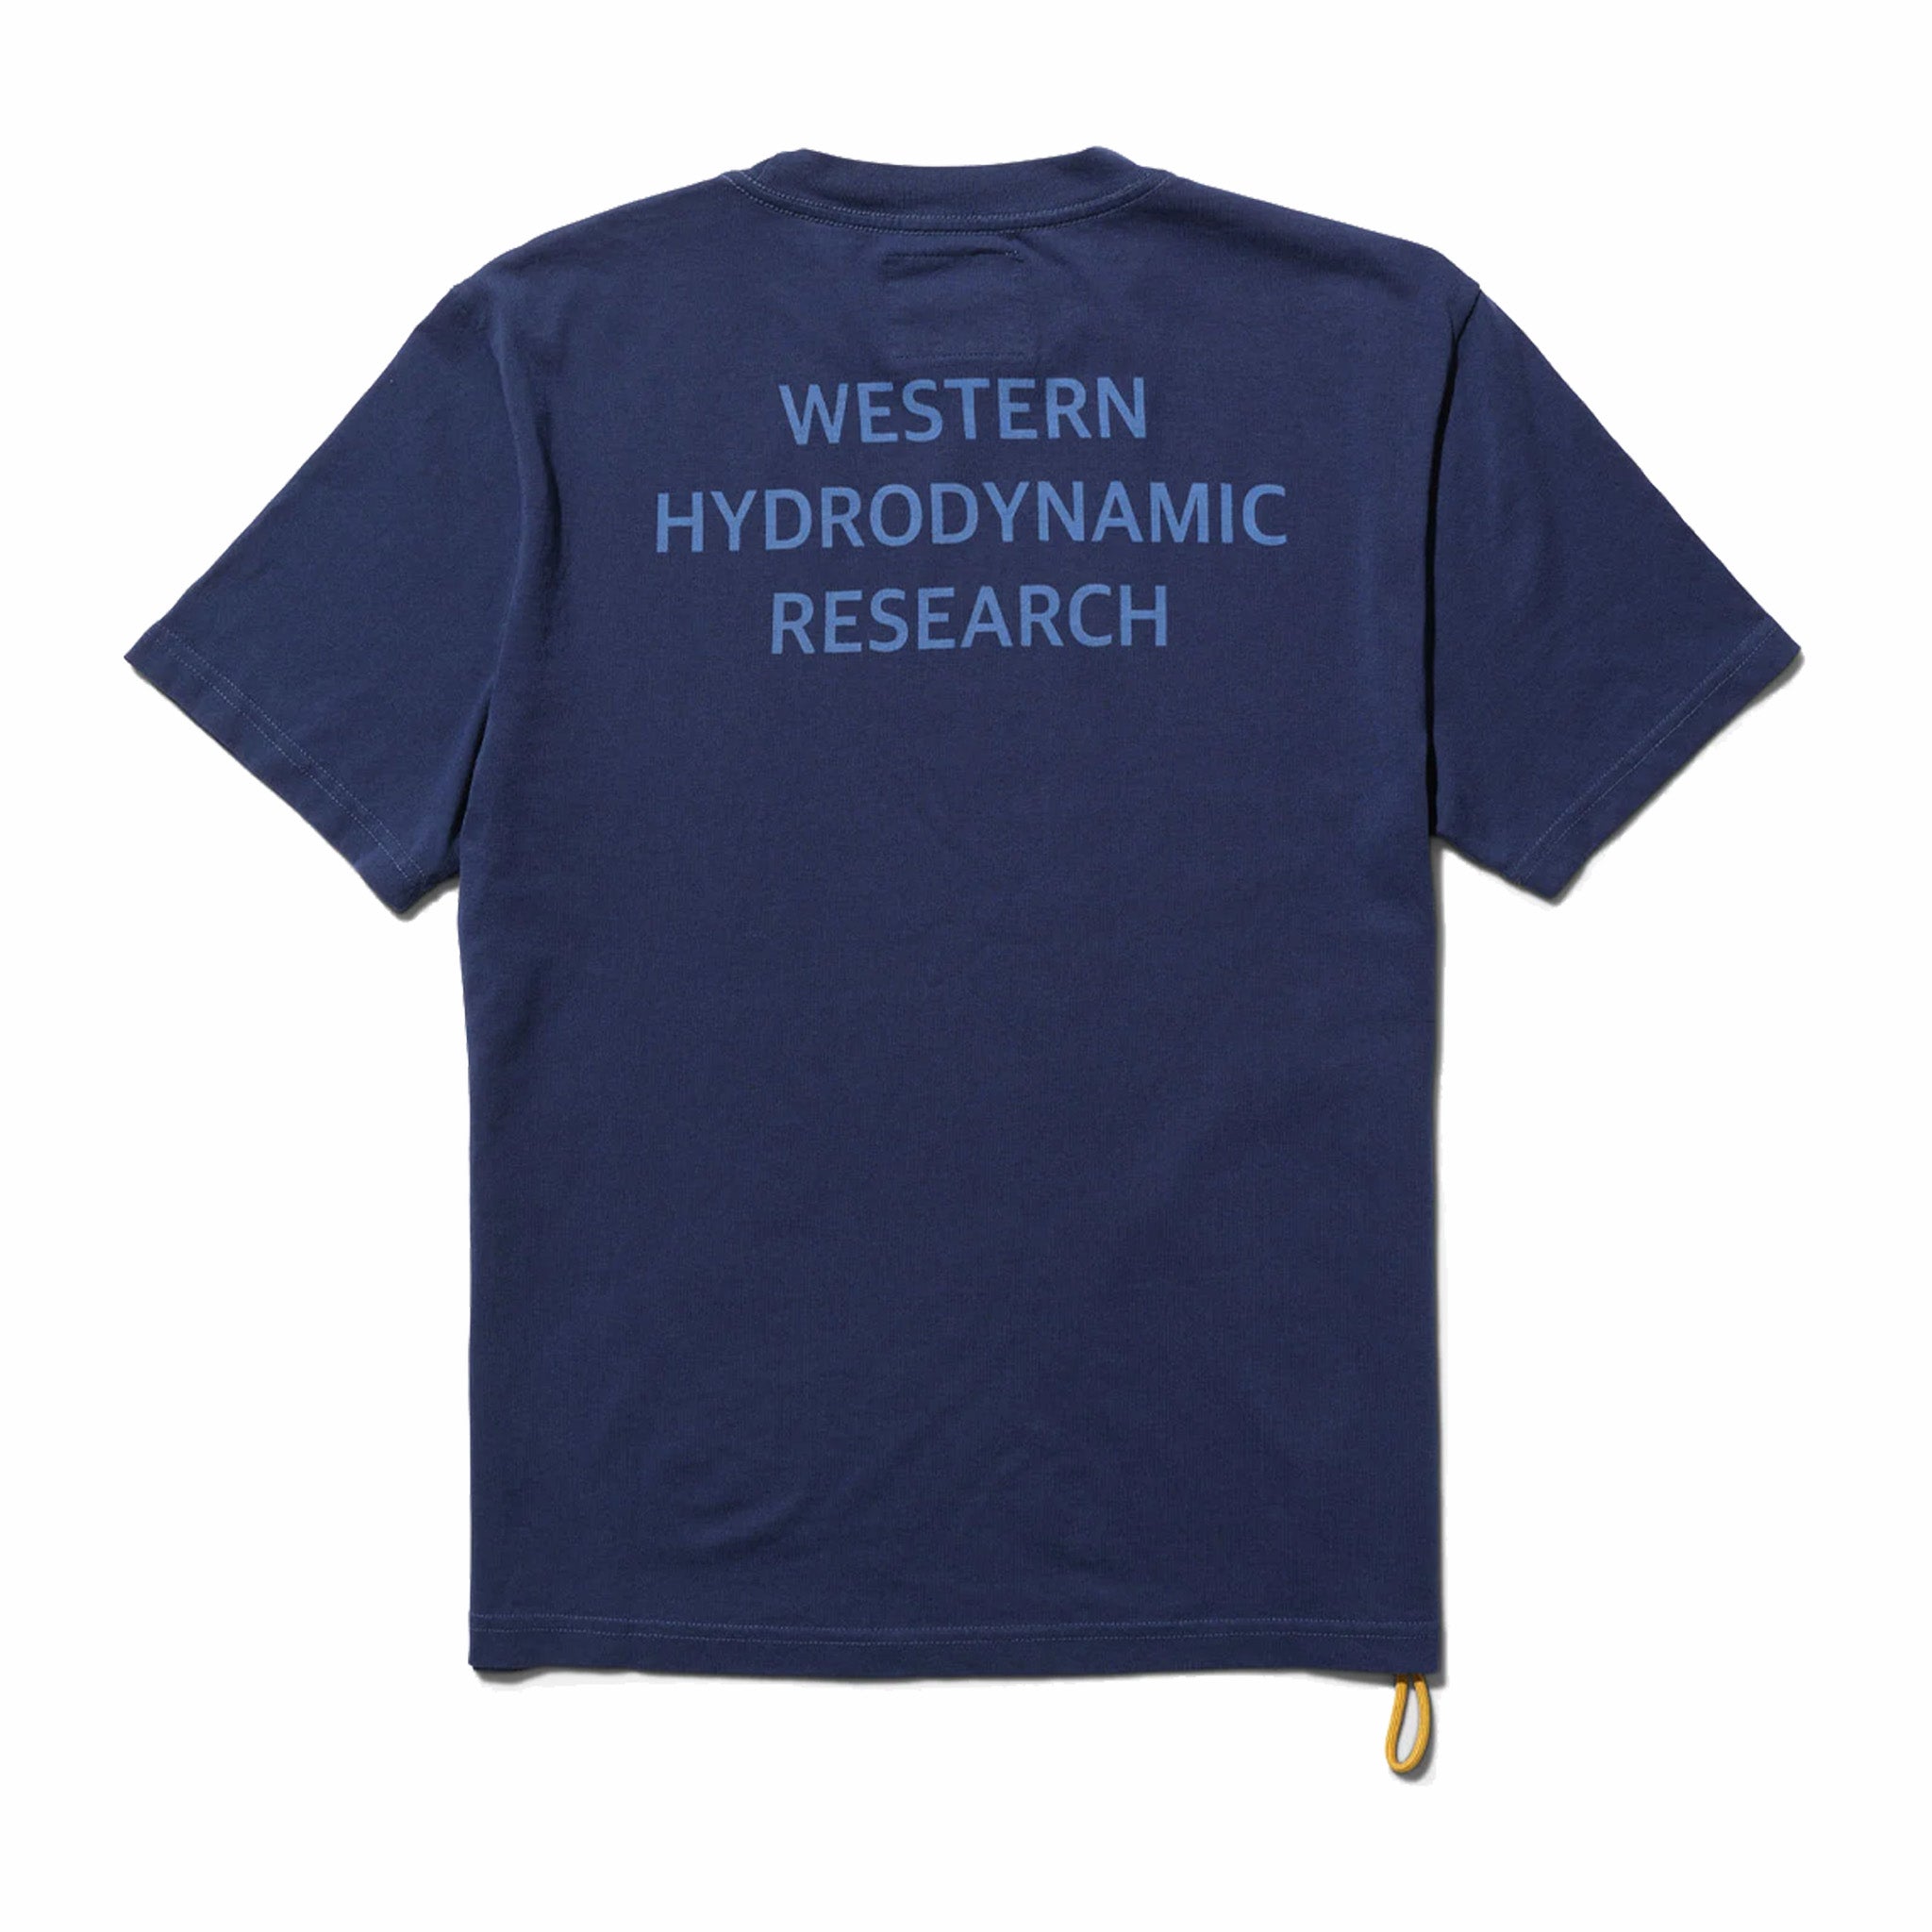 Ricerca idrodinamica occidentale, Maglietta da donna dei ricercatori idrodinamici occidentali (Navy)